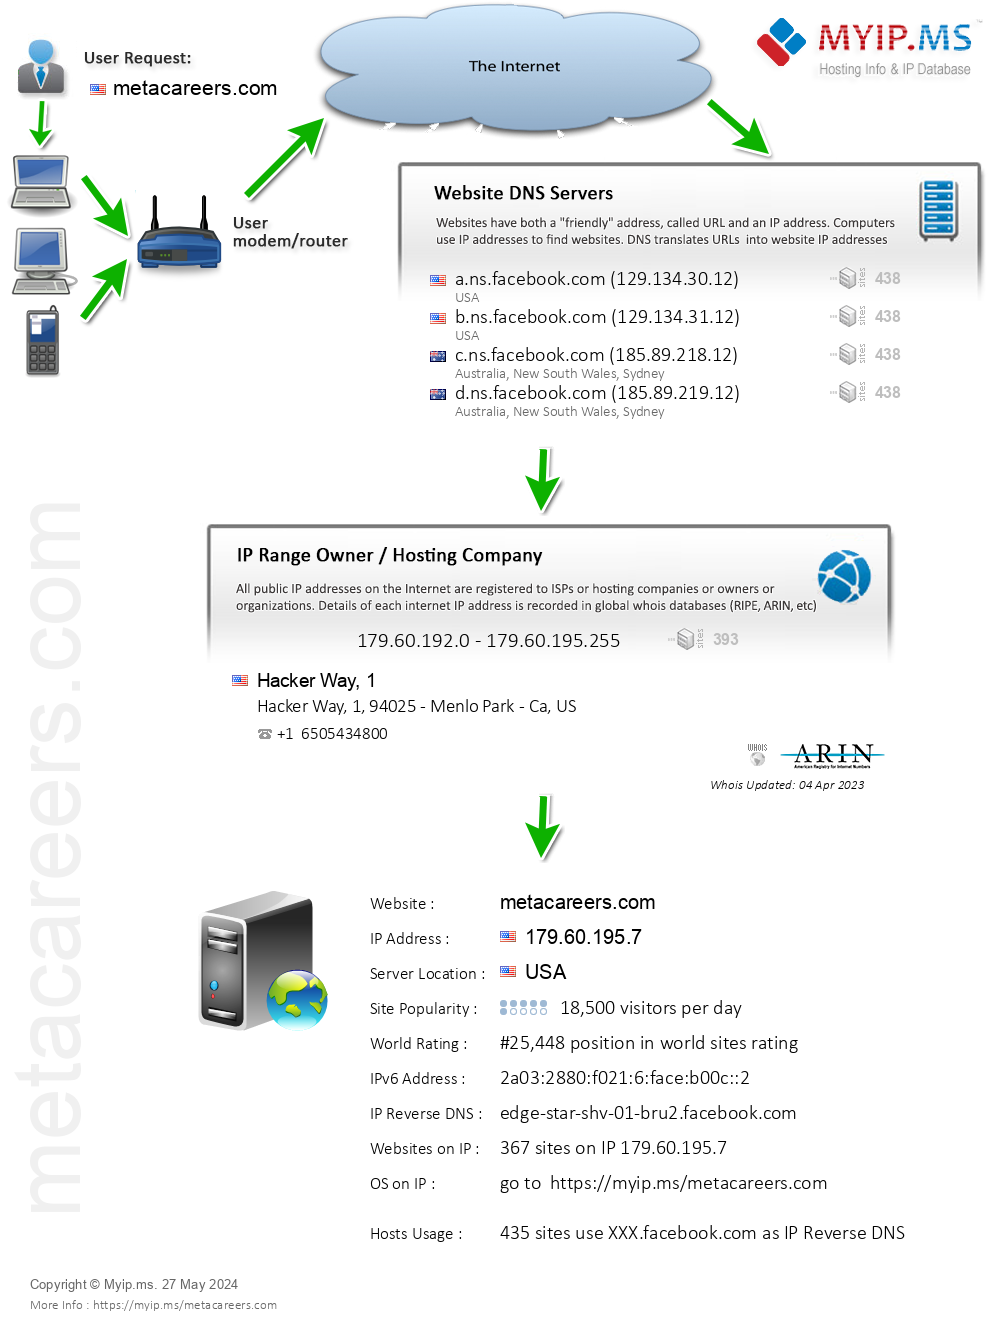 Metacareers.com - Website Hosting Visual IP Diagram